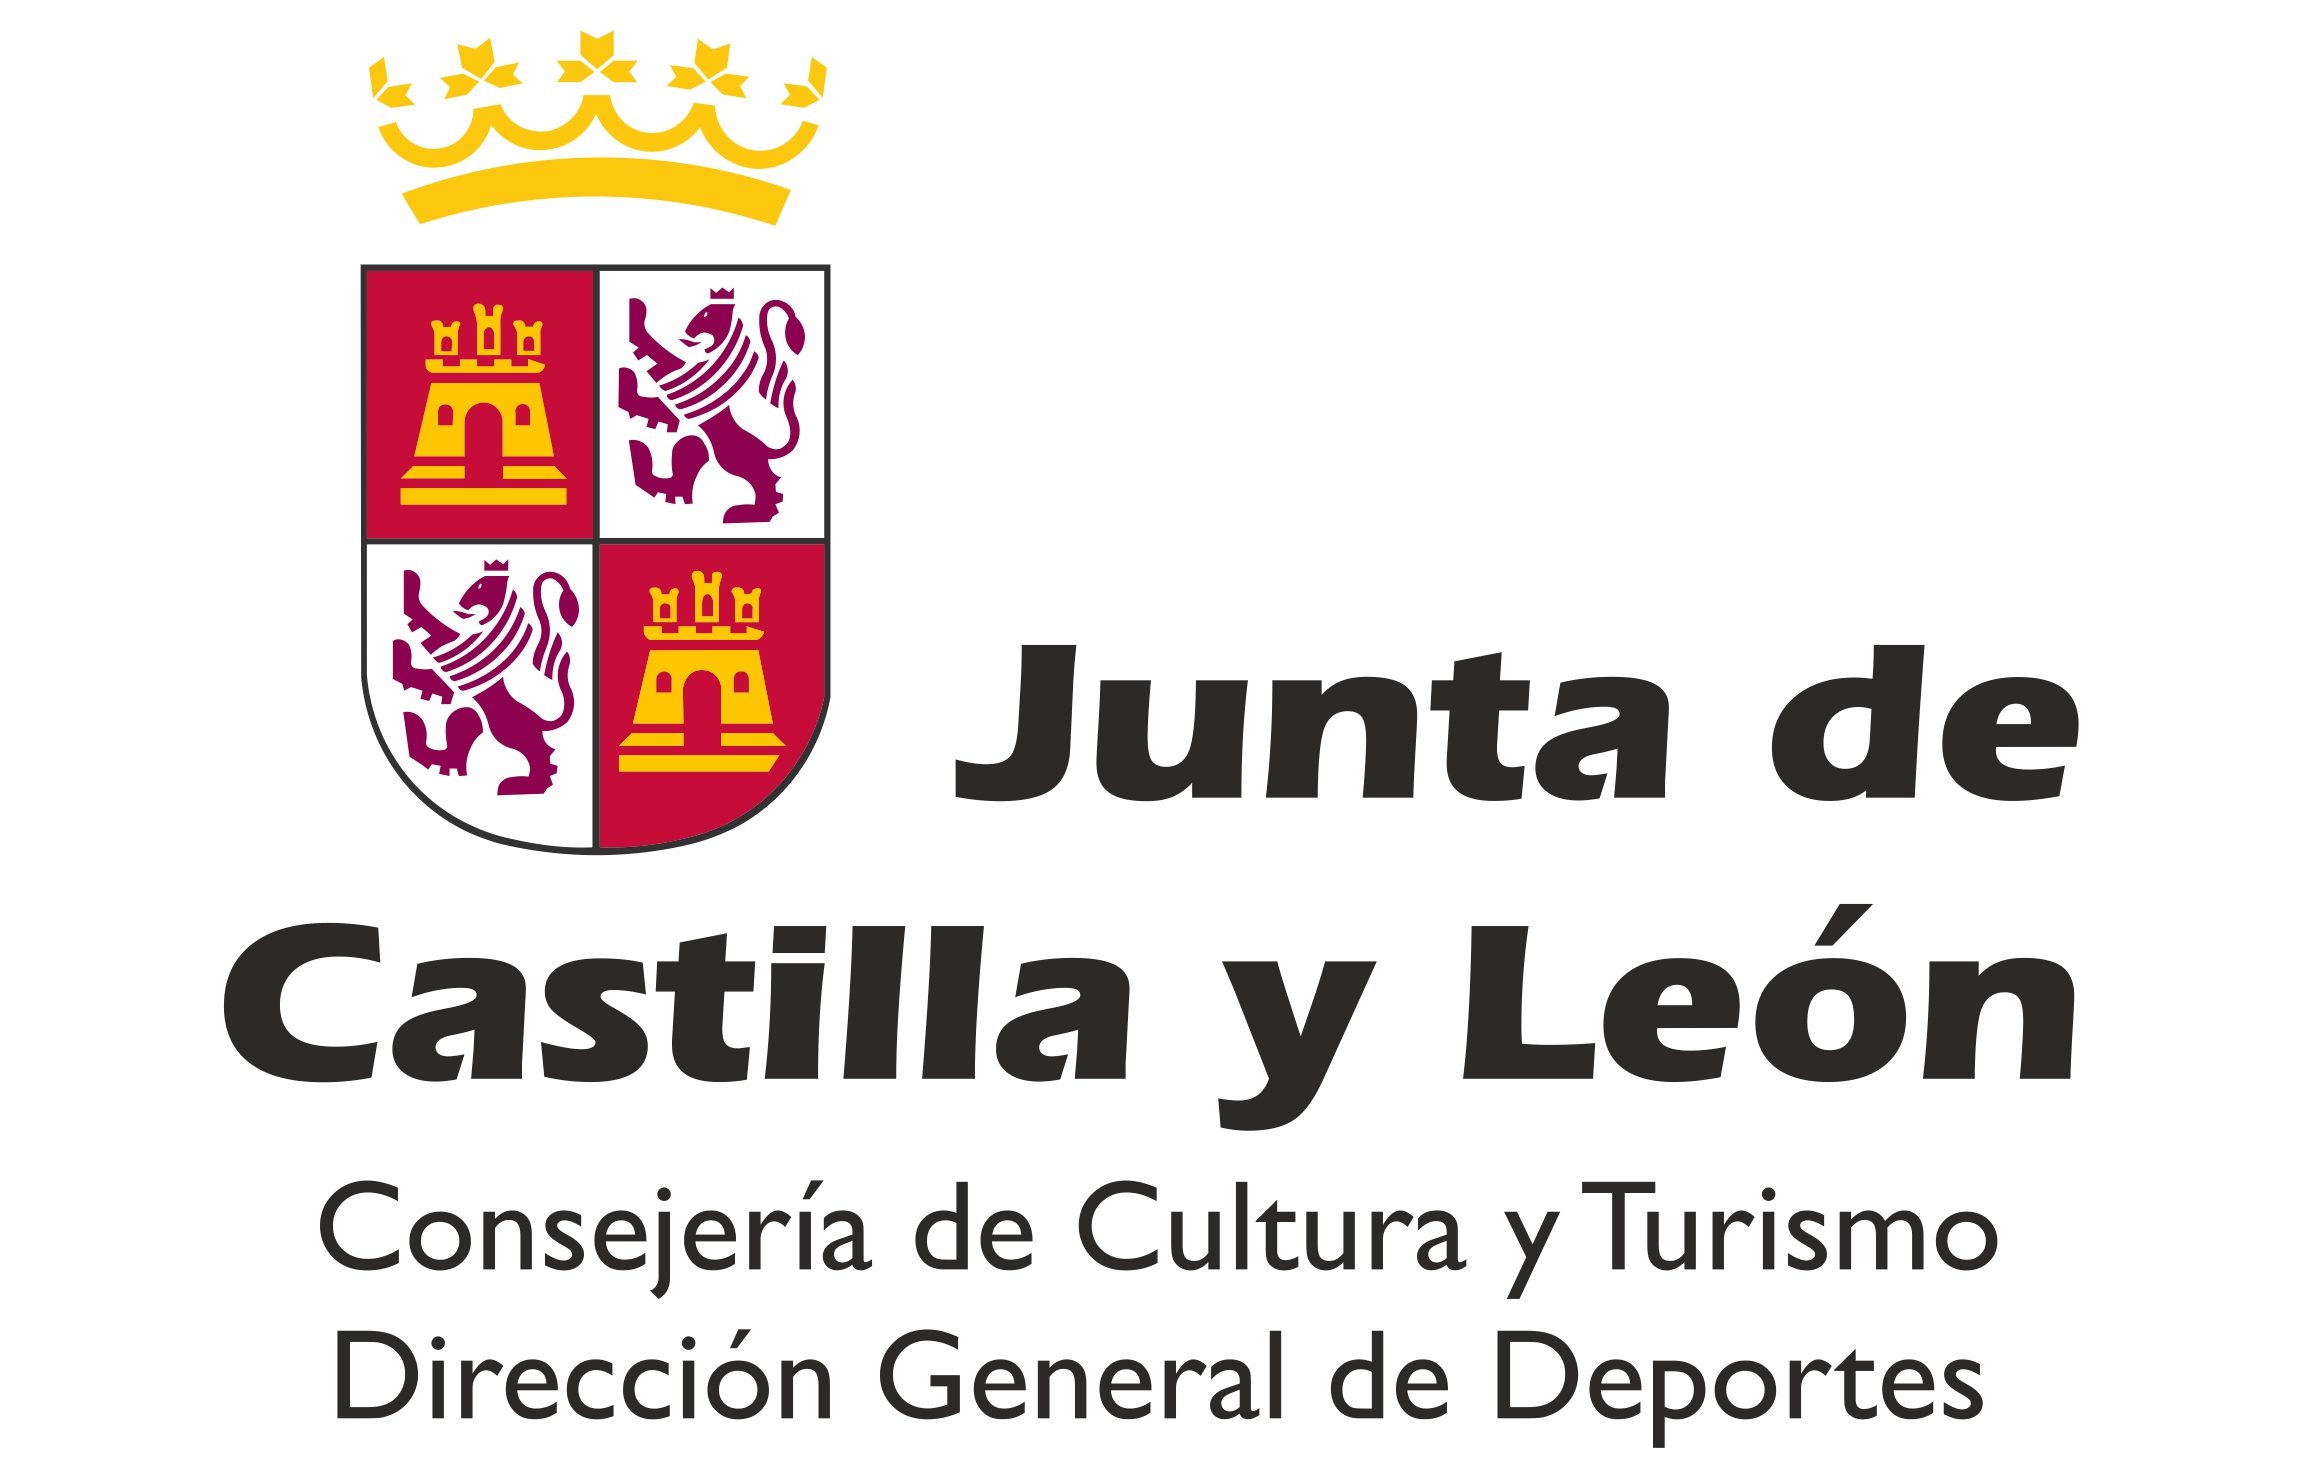 Junta Castila y León D.G. de Deportes